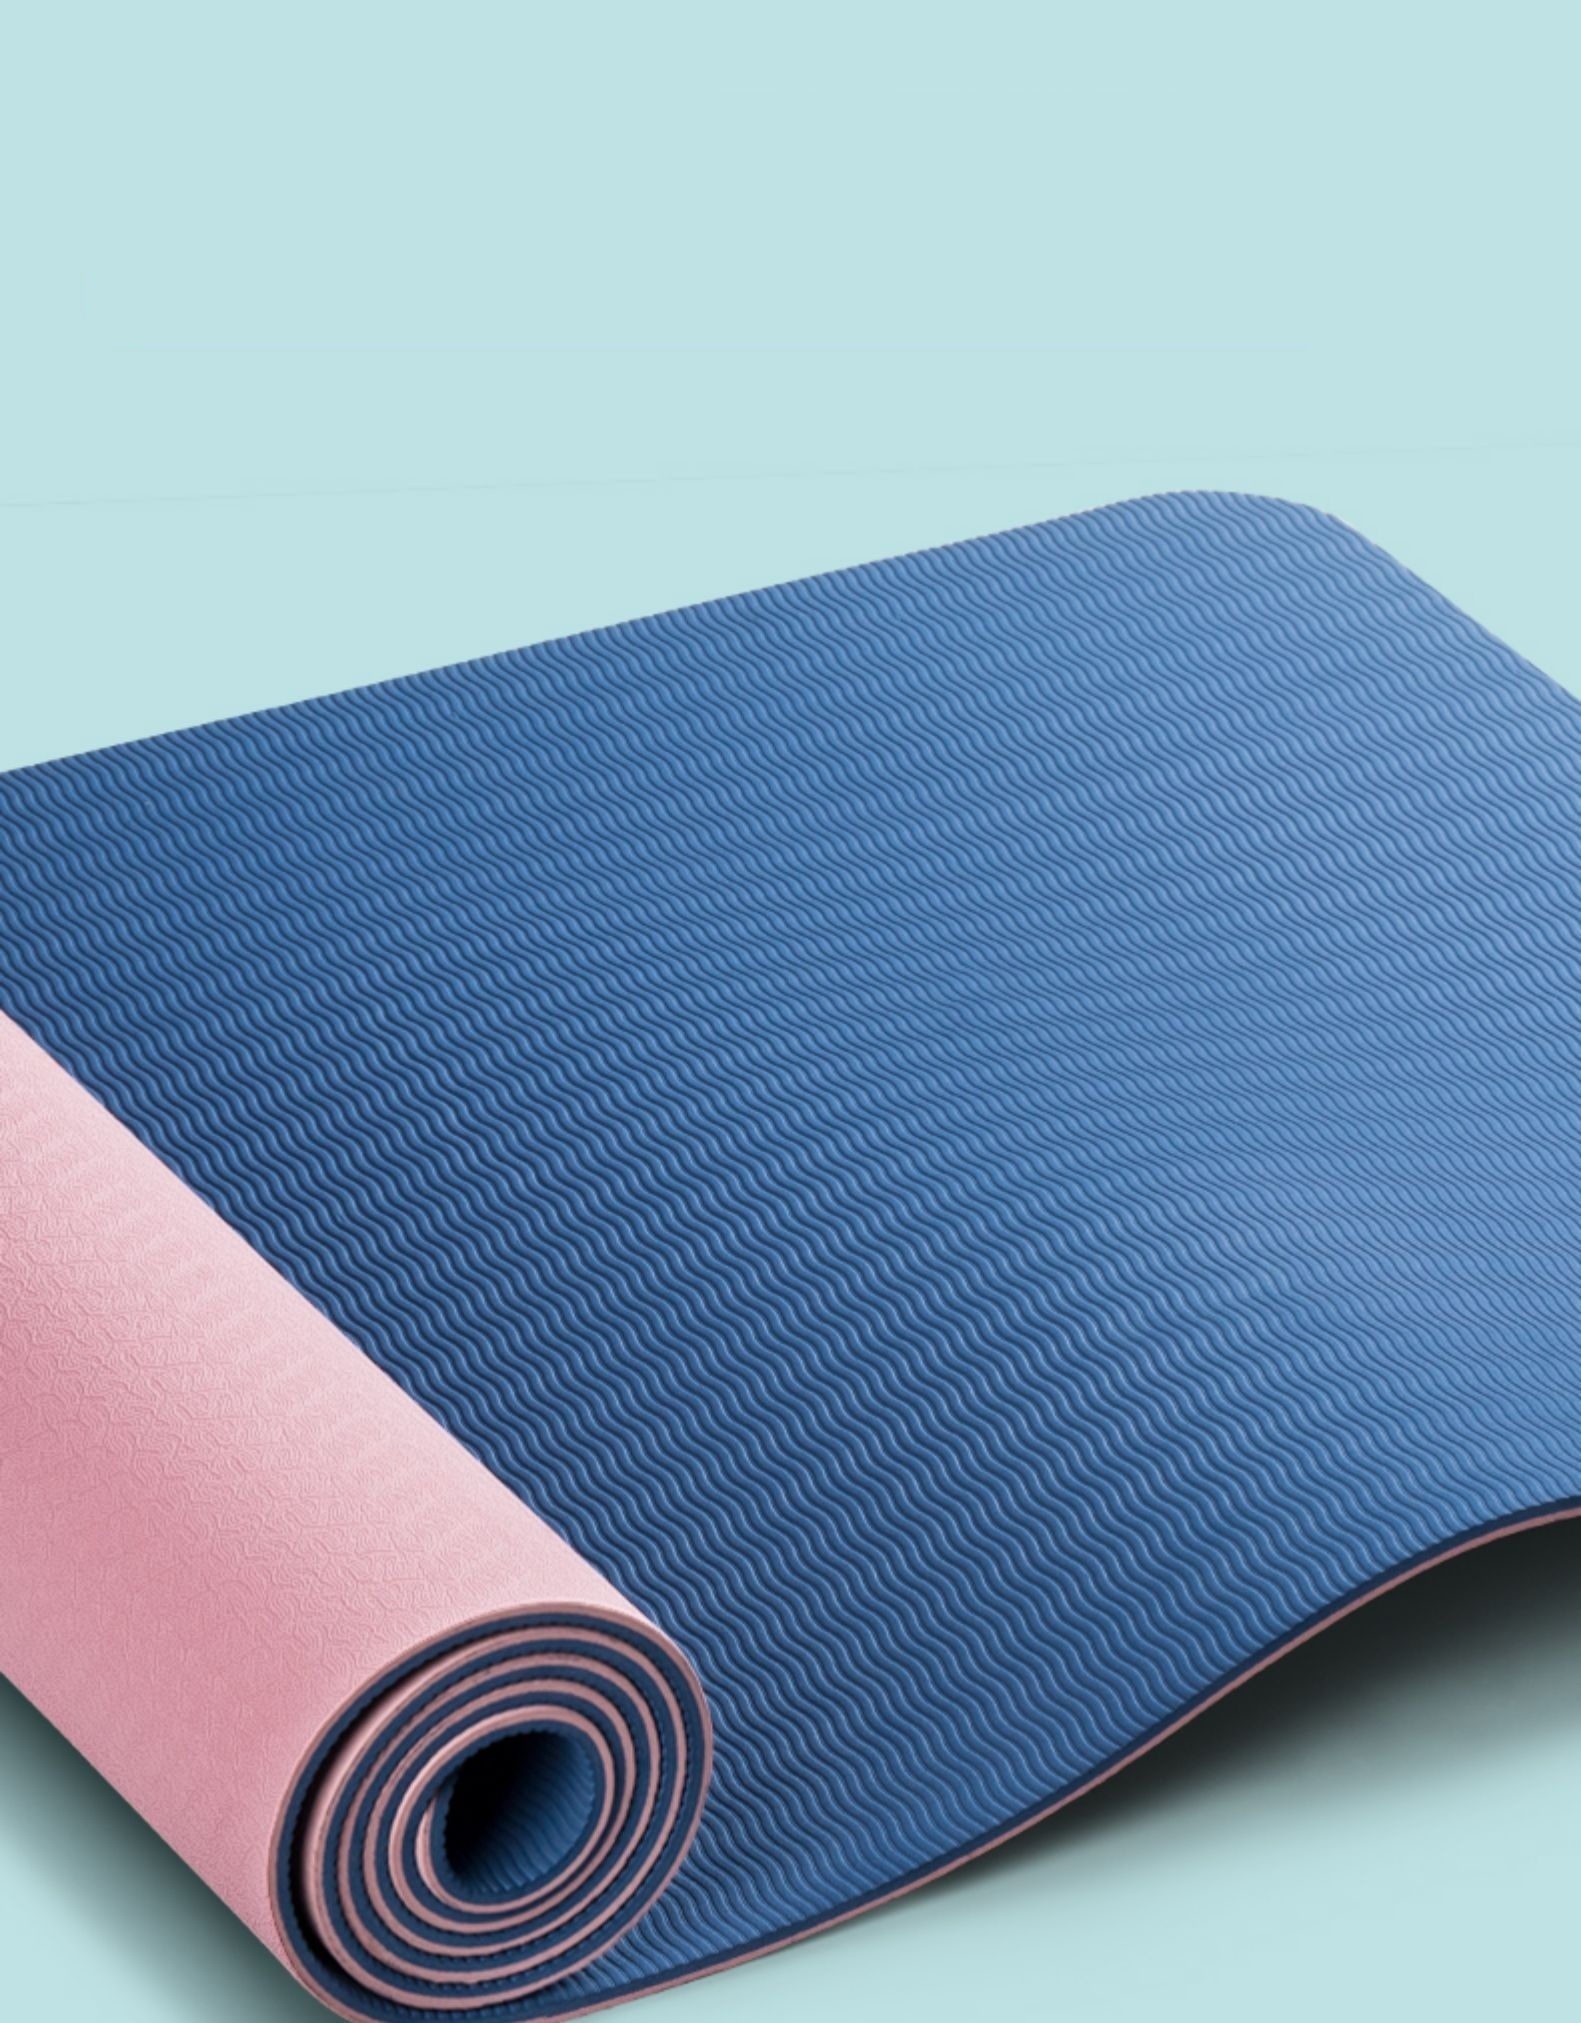 Thảm tập Yoga định tuyến TPE dày 6mm chống trơn trượt - Tặng kèm túi đựng và dây buộc (hồng)